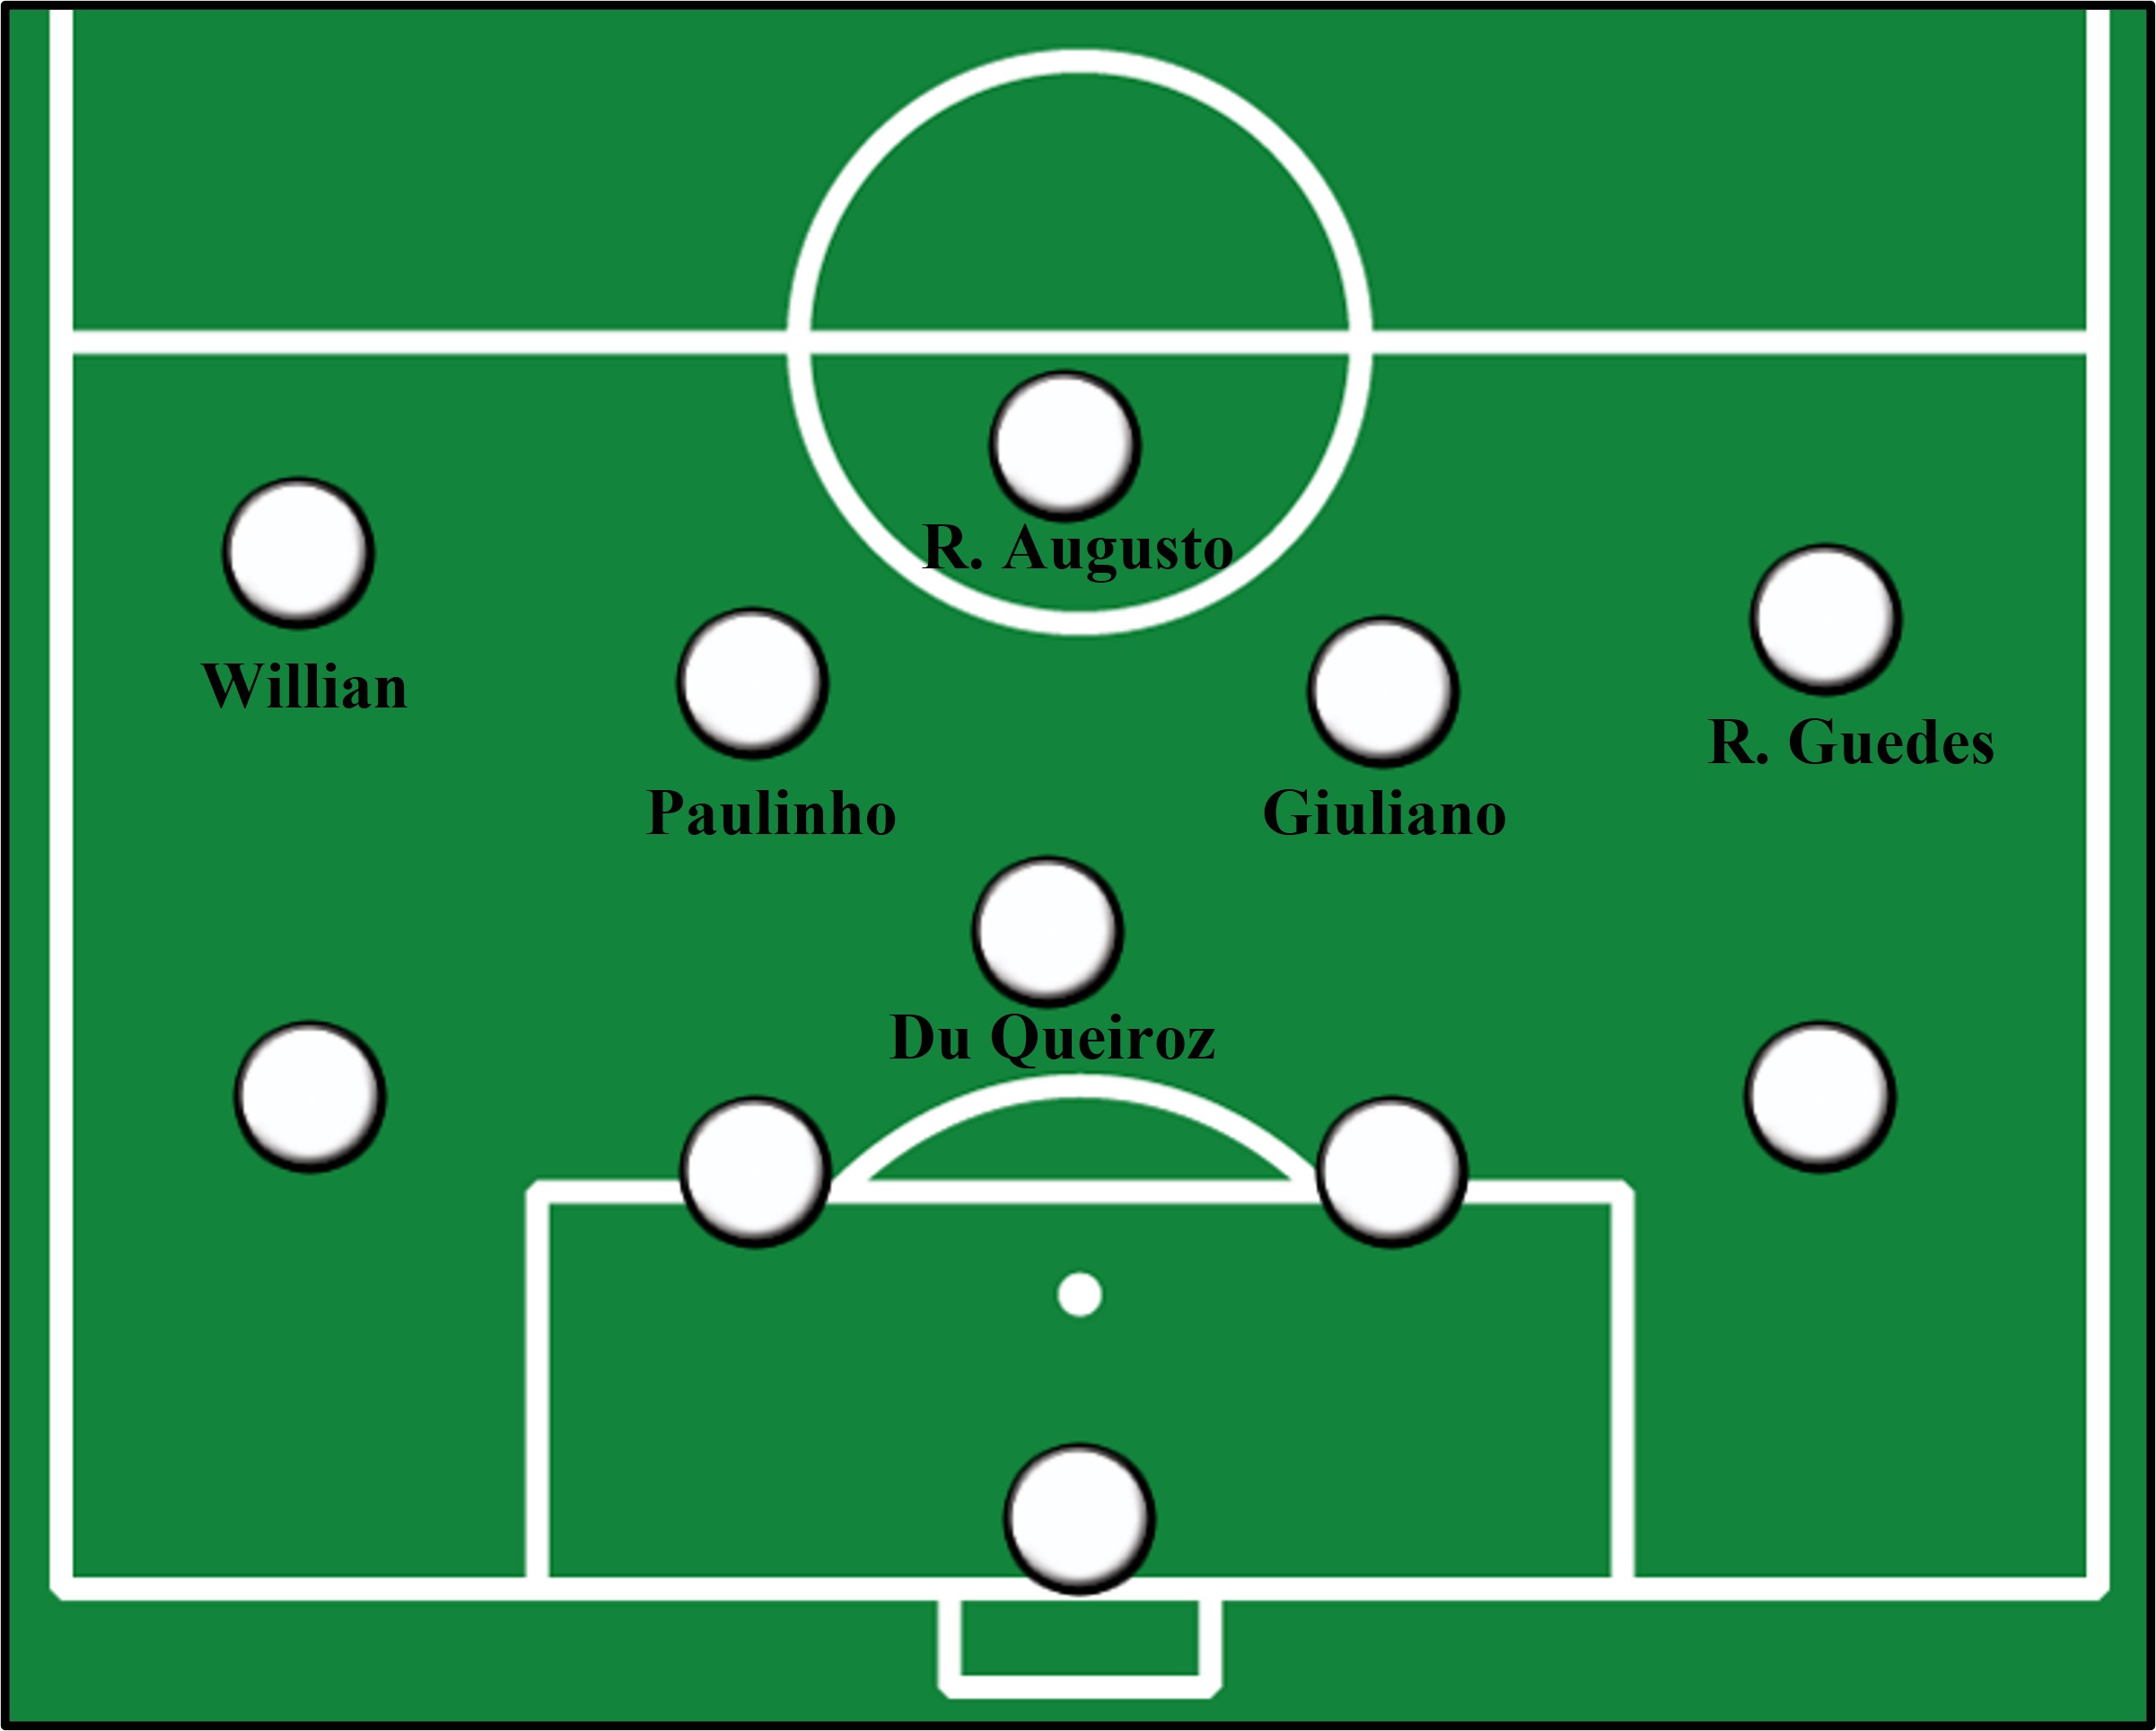 Campo de futebol com bolas brancas representando os jogadores. Estão dispostos na formação 1-4-1-4-1.